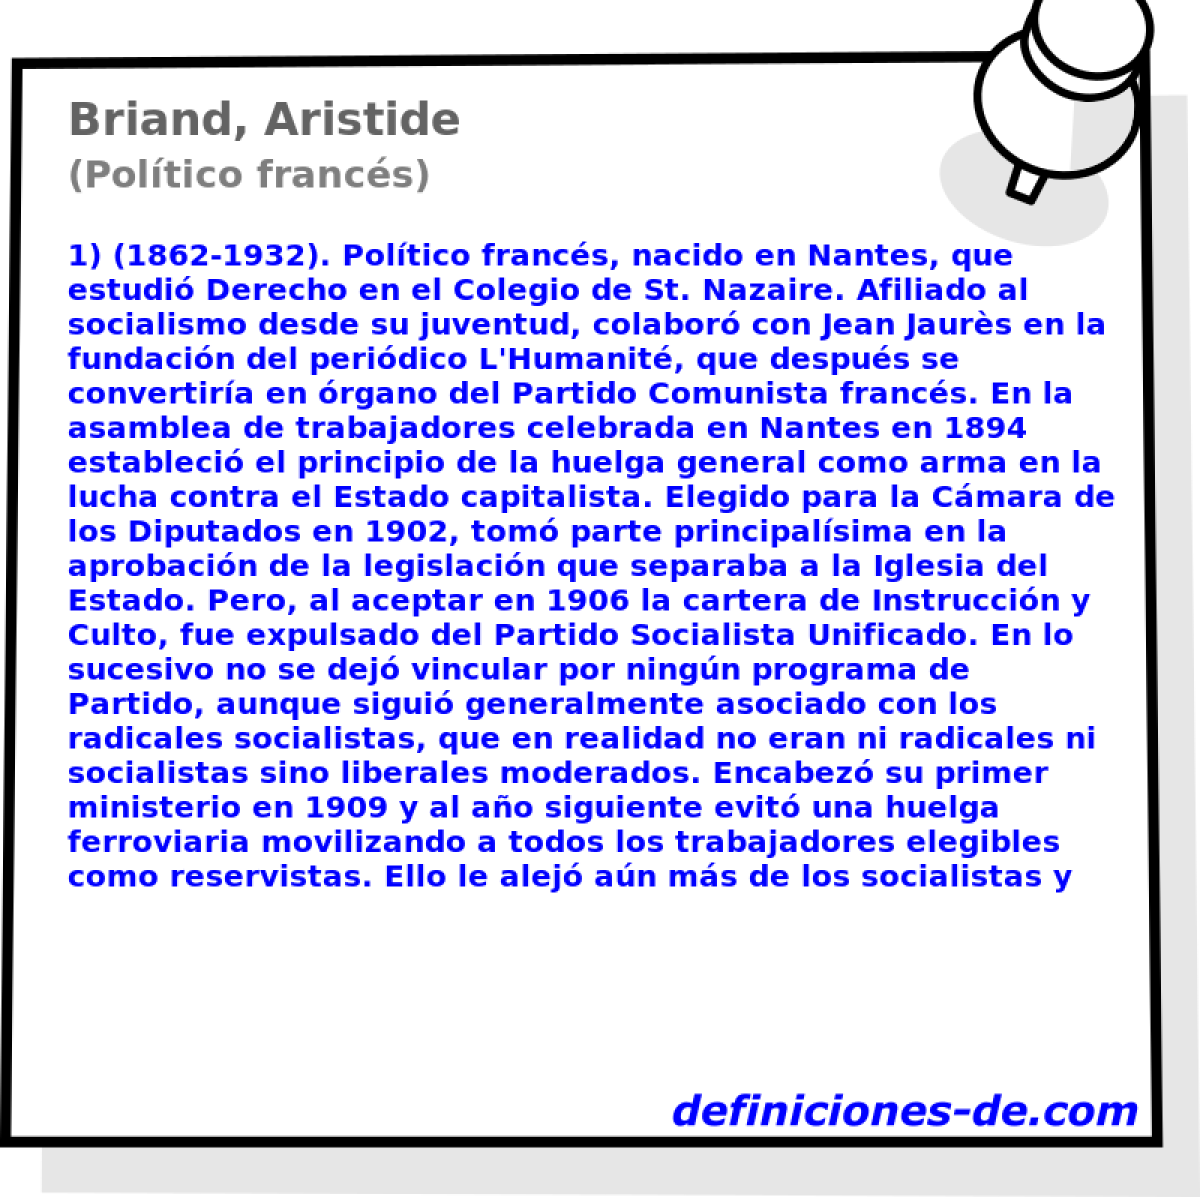 Briand, Aristide (Poltico francs)